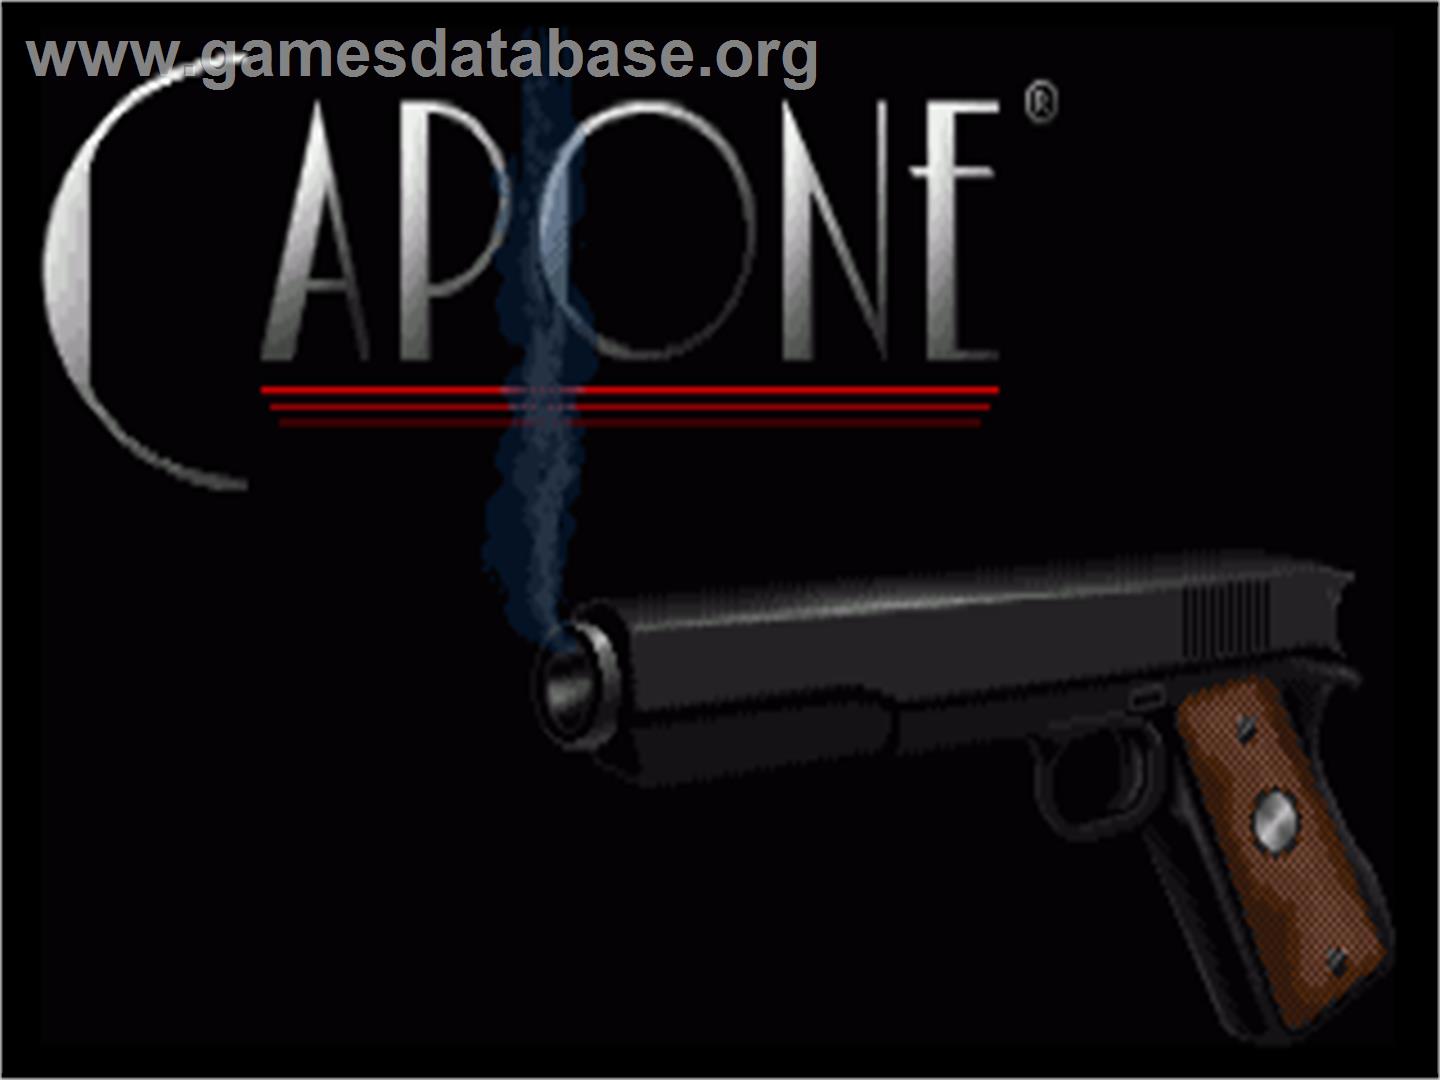 Capone - Commodore Amiga - Artwork - Title Screen